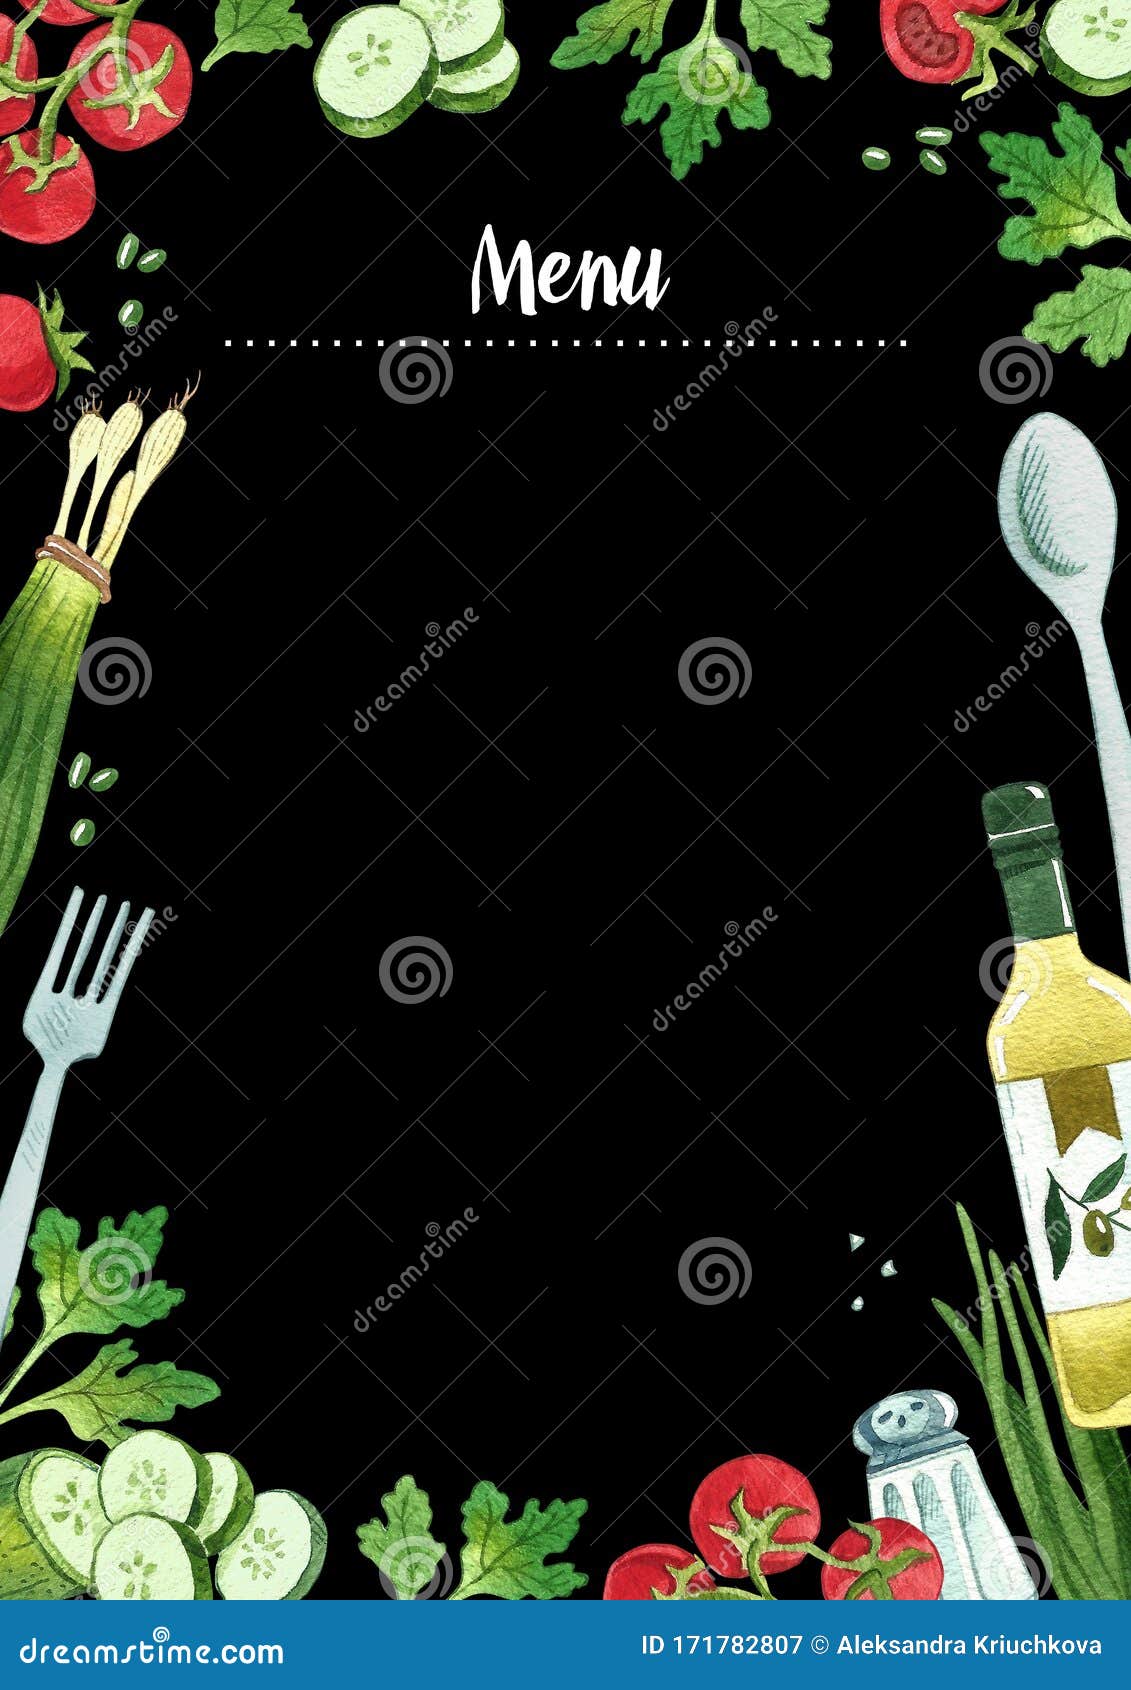 Details 100 background food menu design 